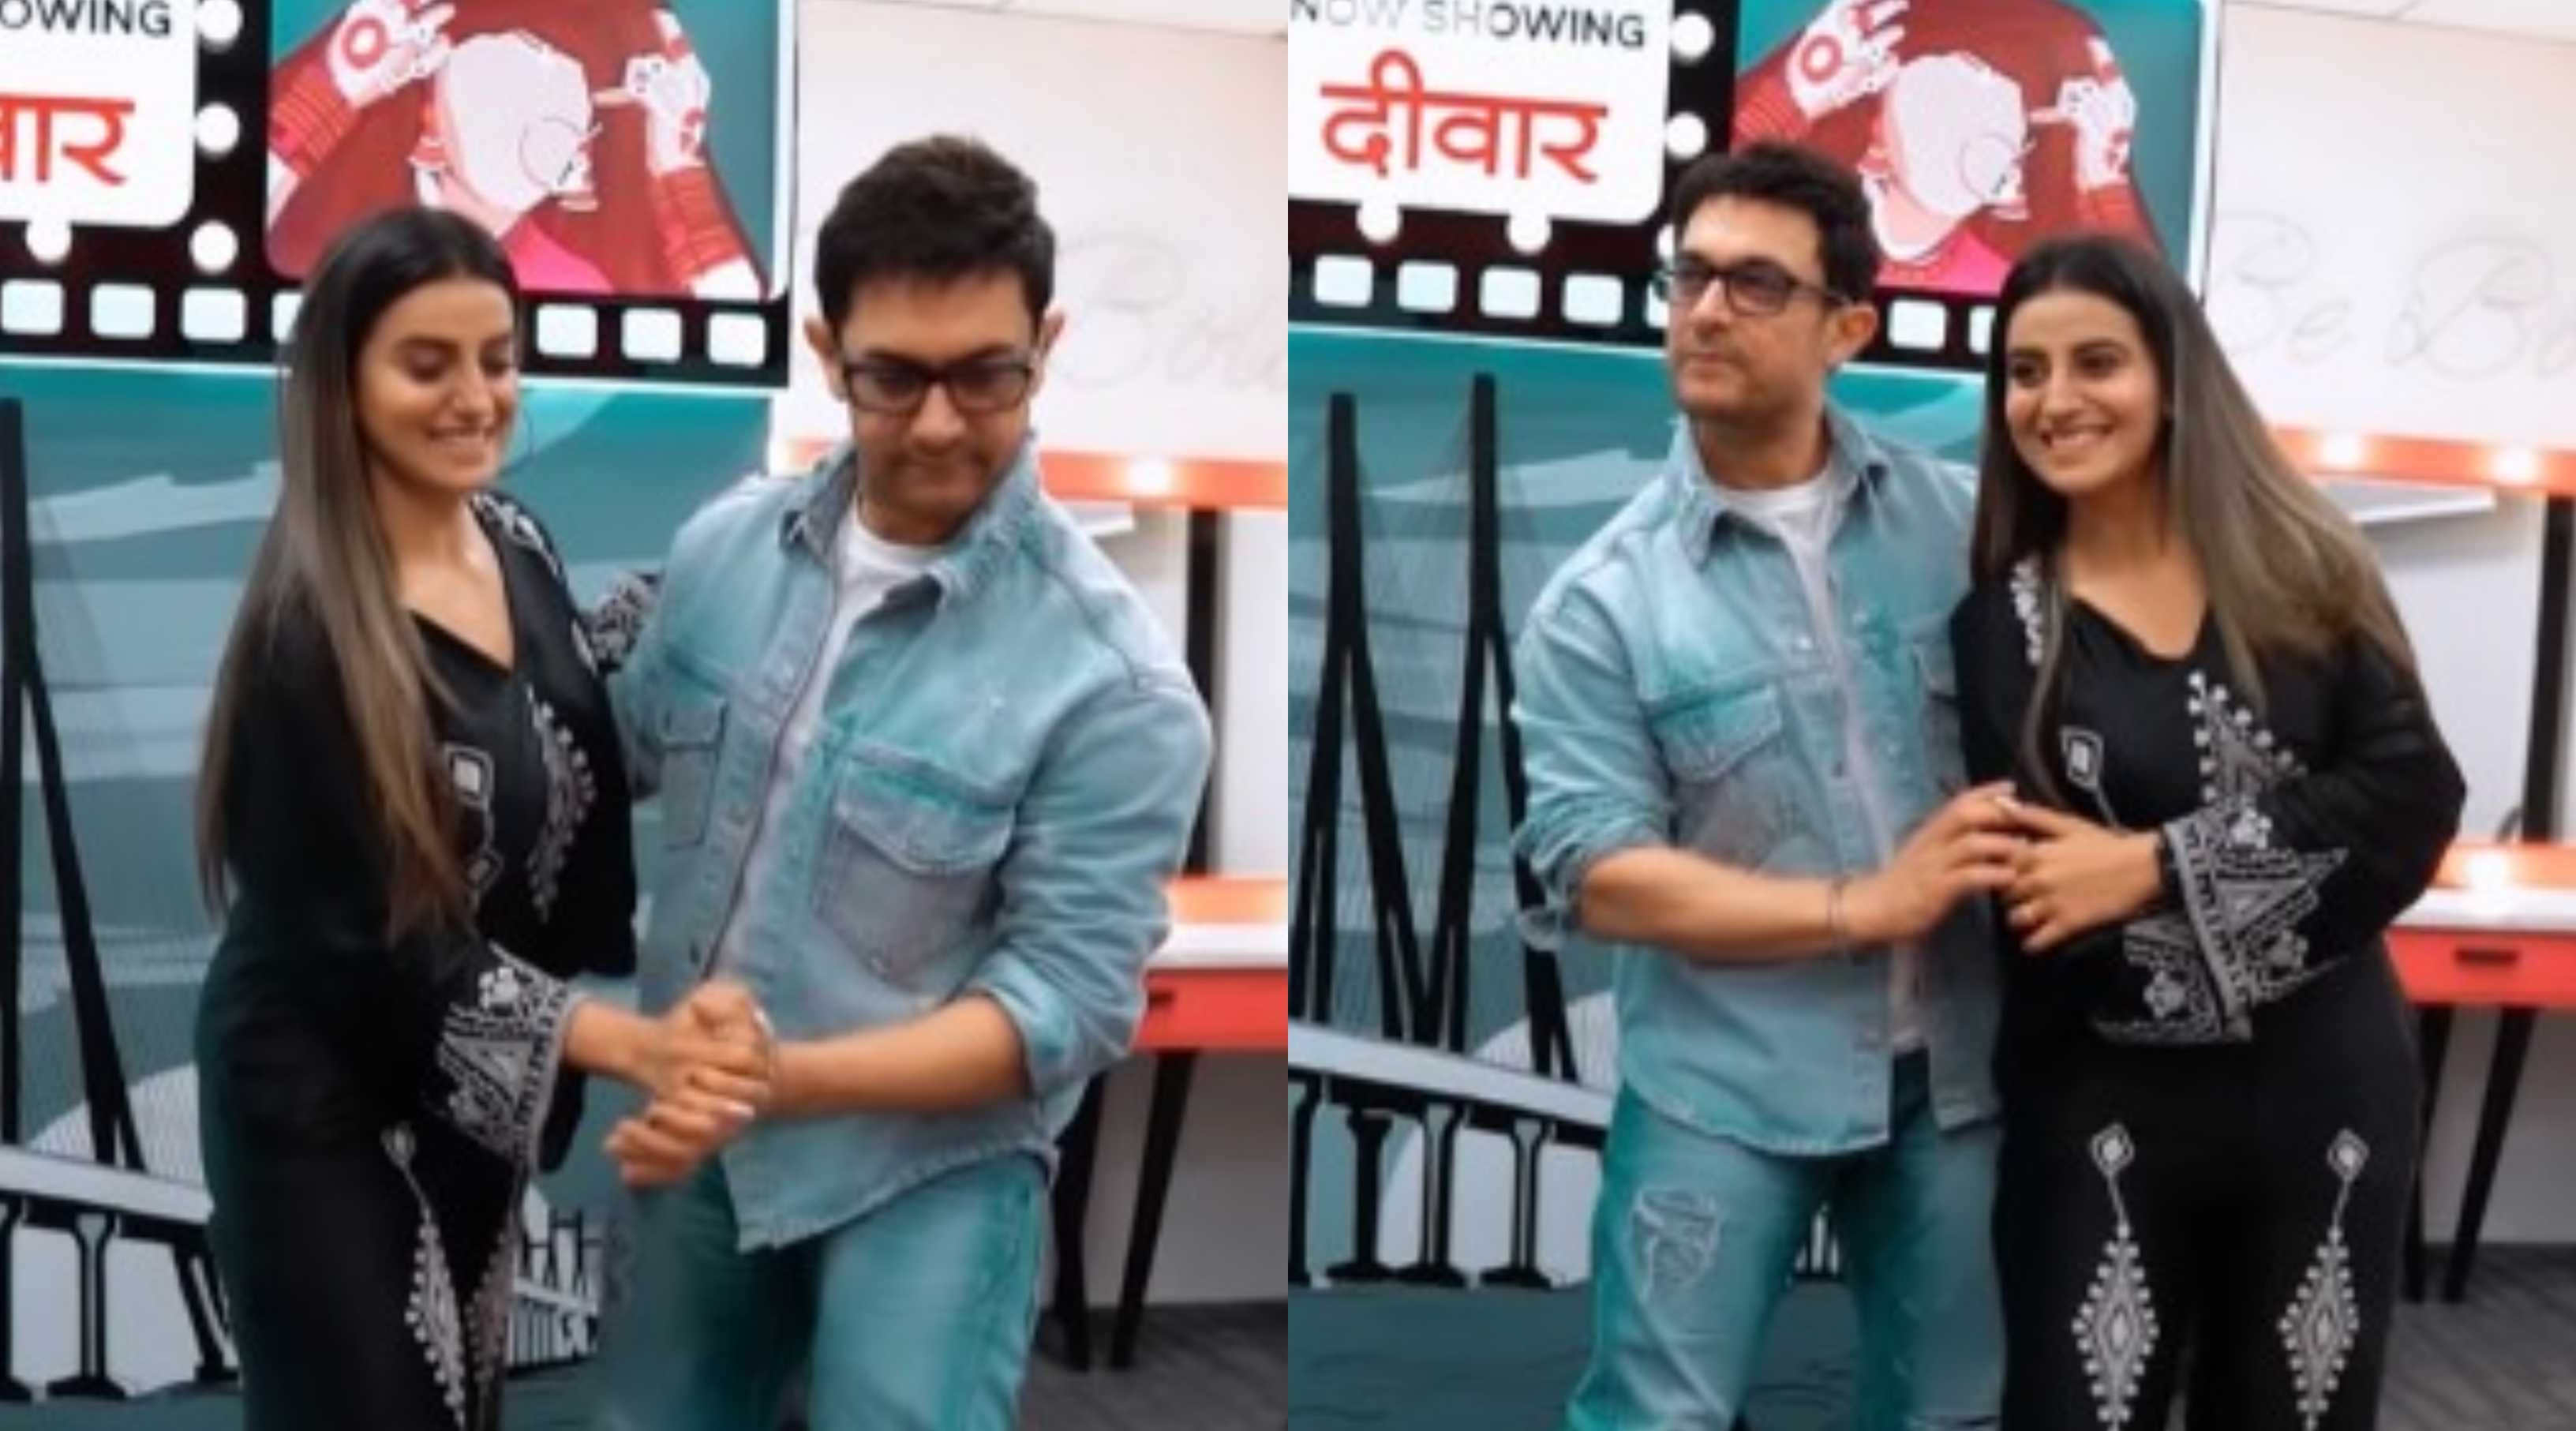 भोजपुरी एक्ट्रेस अक्षरा सिंह संग रोमांटिक होते दिखे आमिर खान, वायरल हो रहा है ये जबरदस्त वीडियो